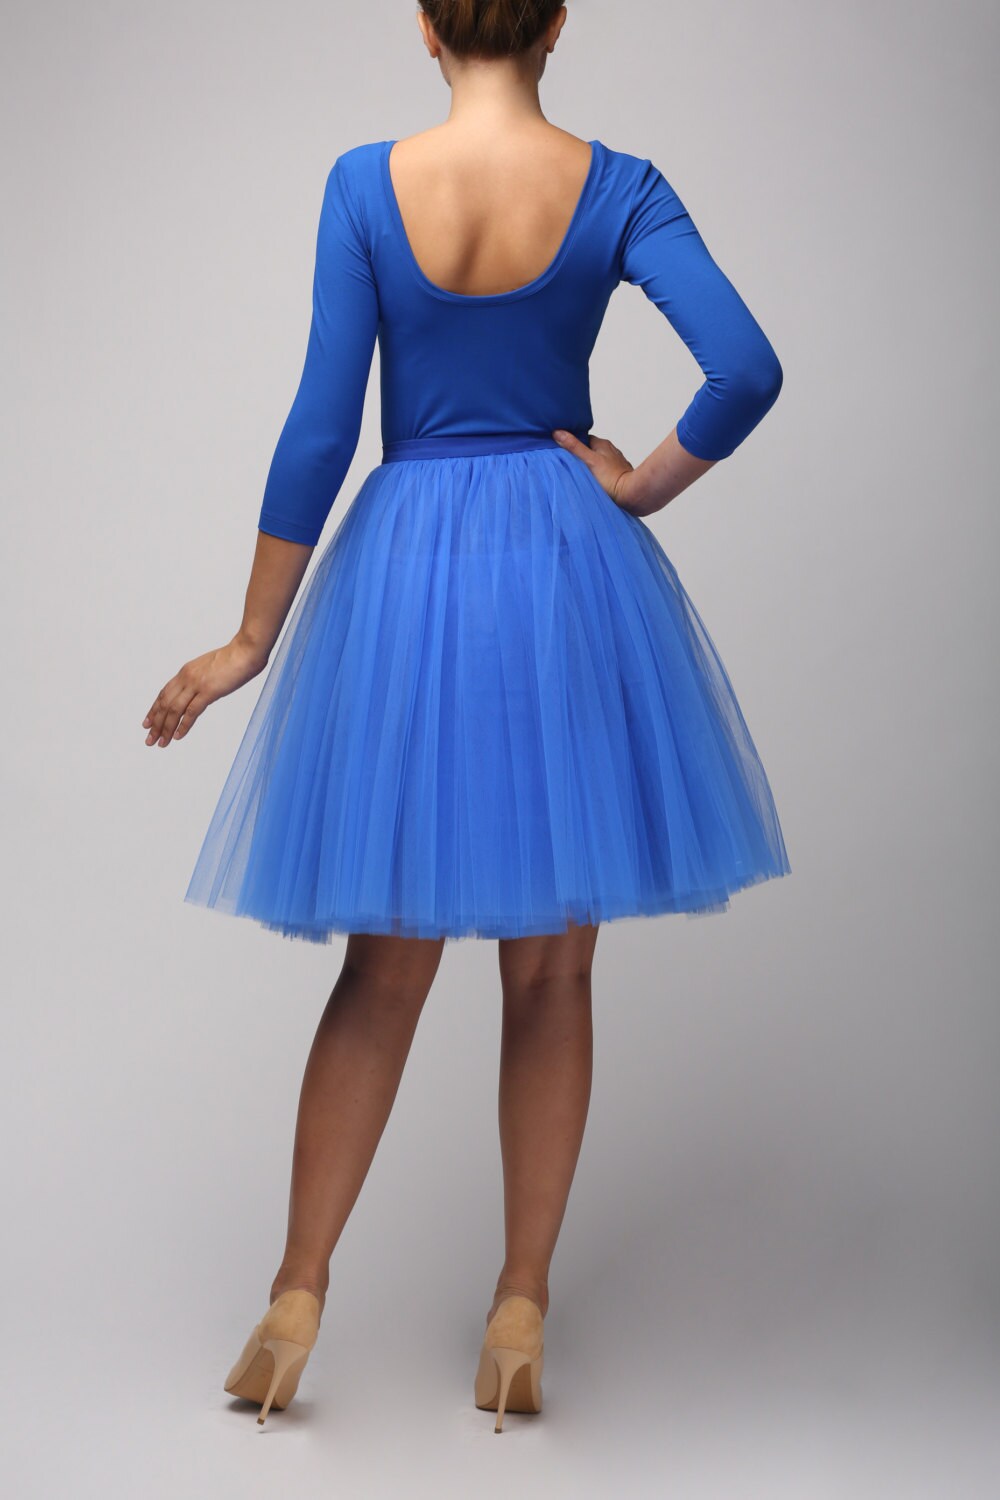 Sapphire tulle skirt Handmade tutu skirt High quality skirt